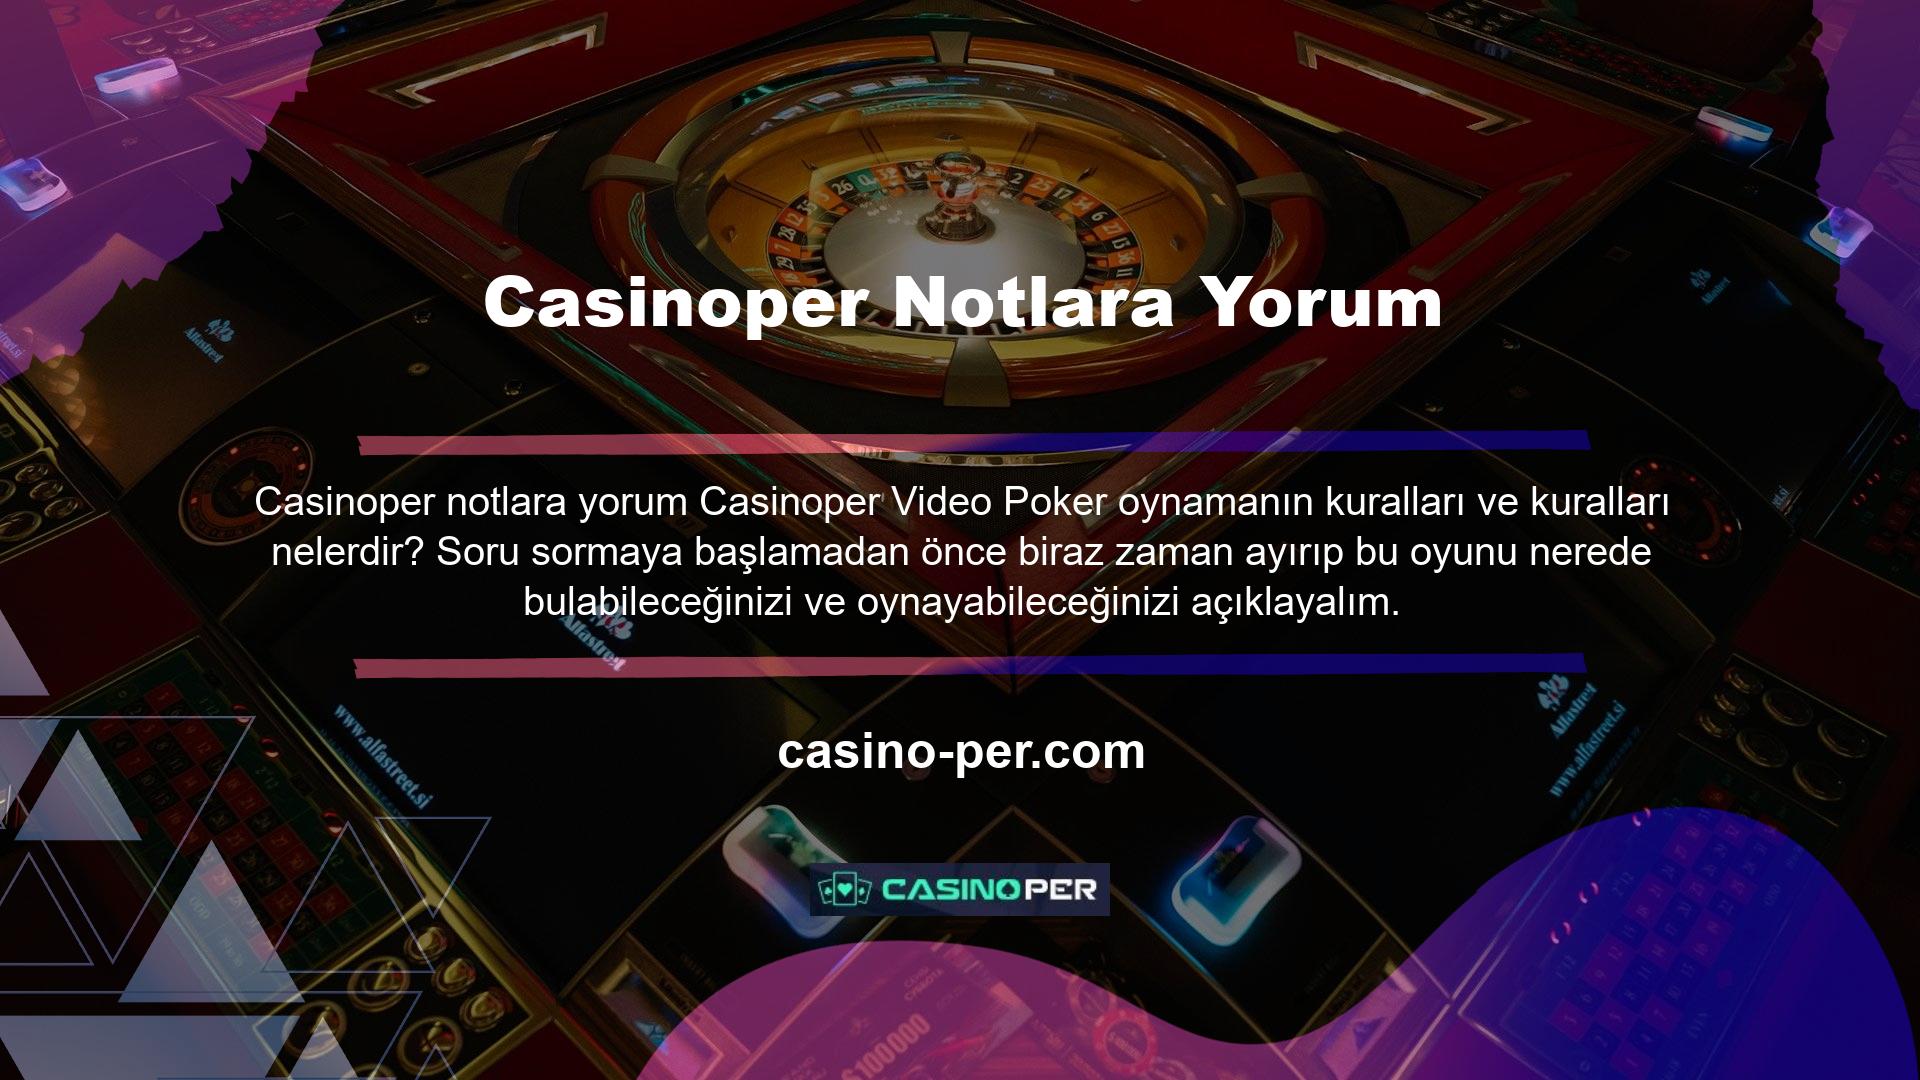 Casinoper Video Poker'i nerede oynayabilirim? Nerede Video Poker oynayabilirim? Bu oyunu Casinoper web sitesinde oynayabilmek için öncelikle Casinoper bir hesap oluşturmanız gerekmektedir